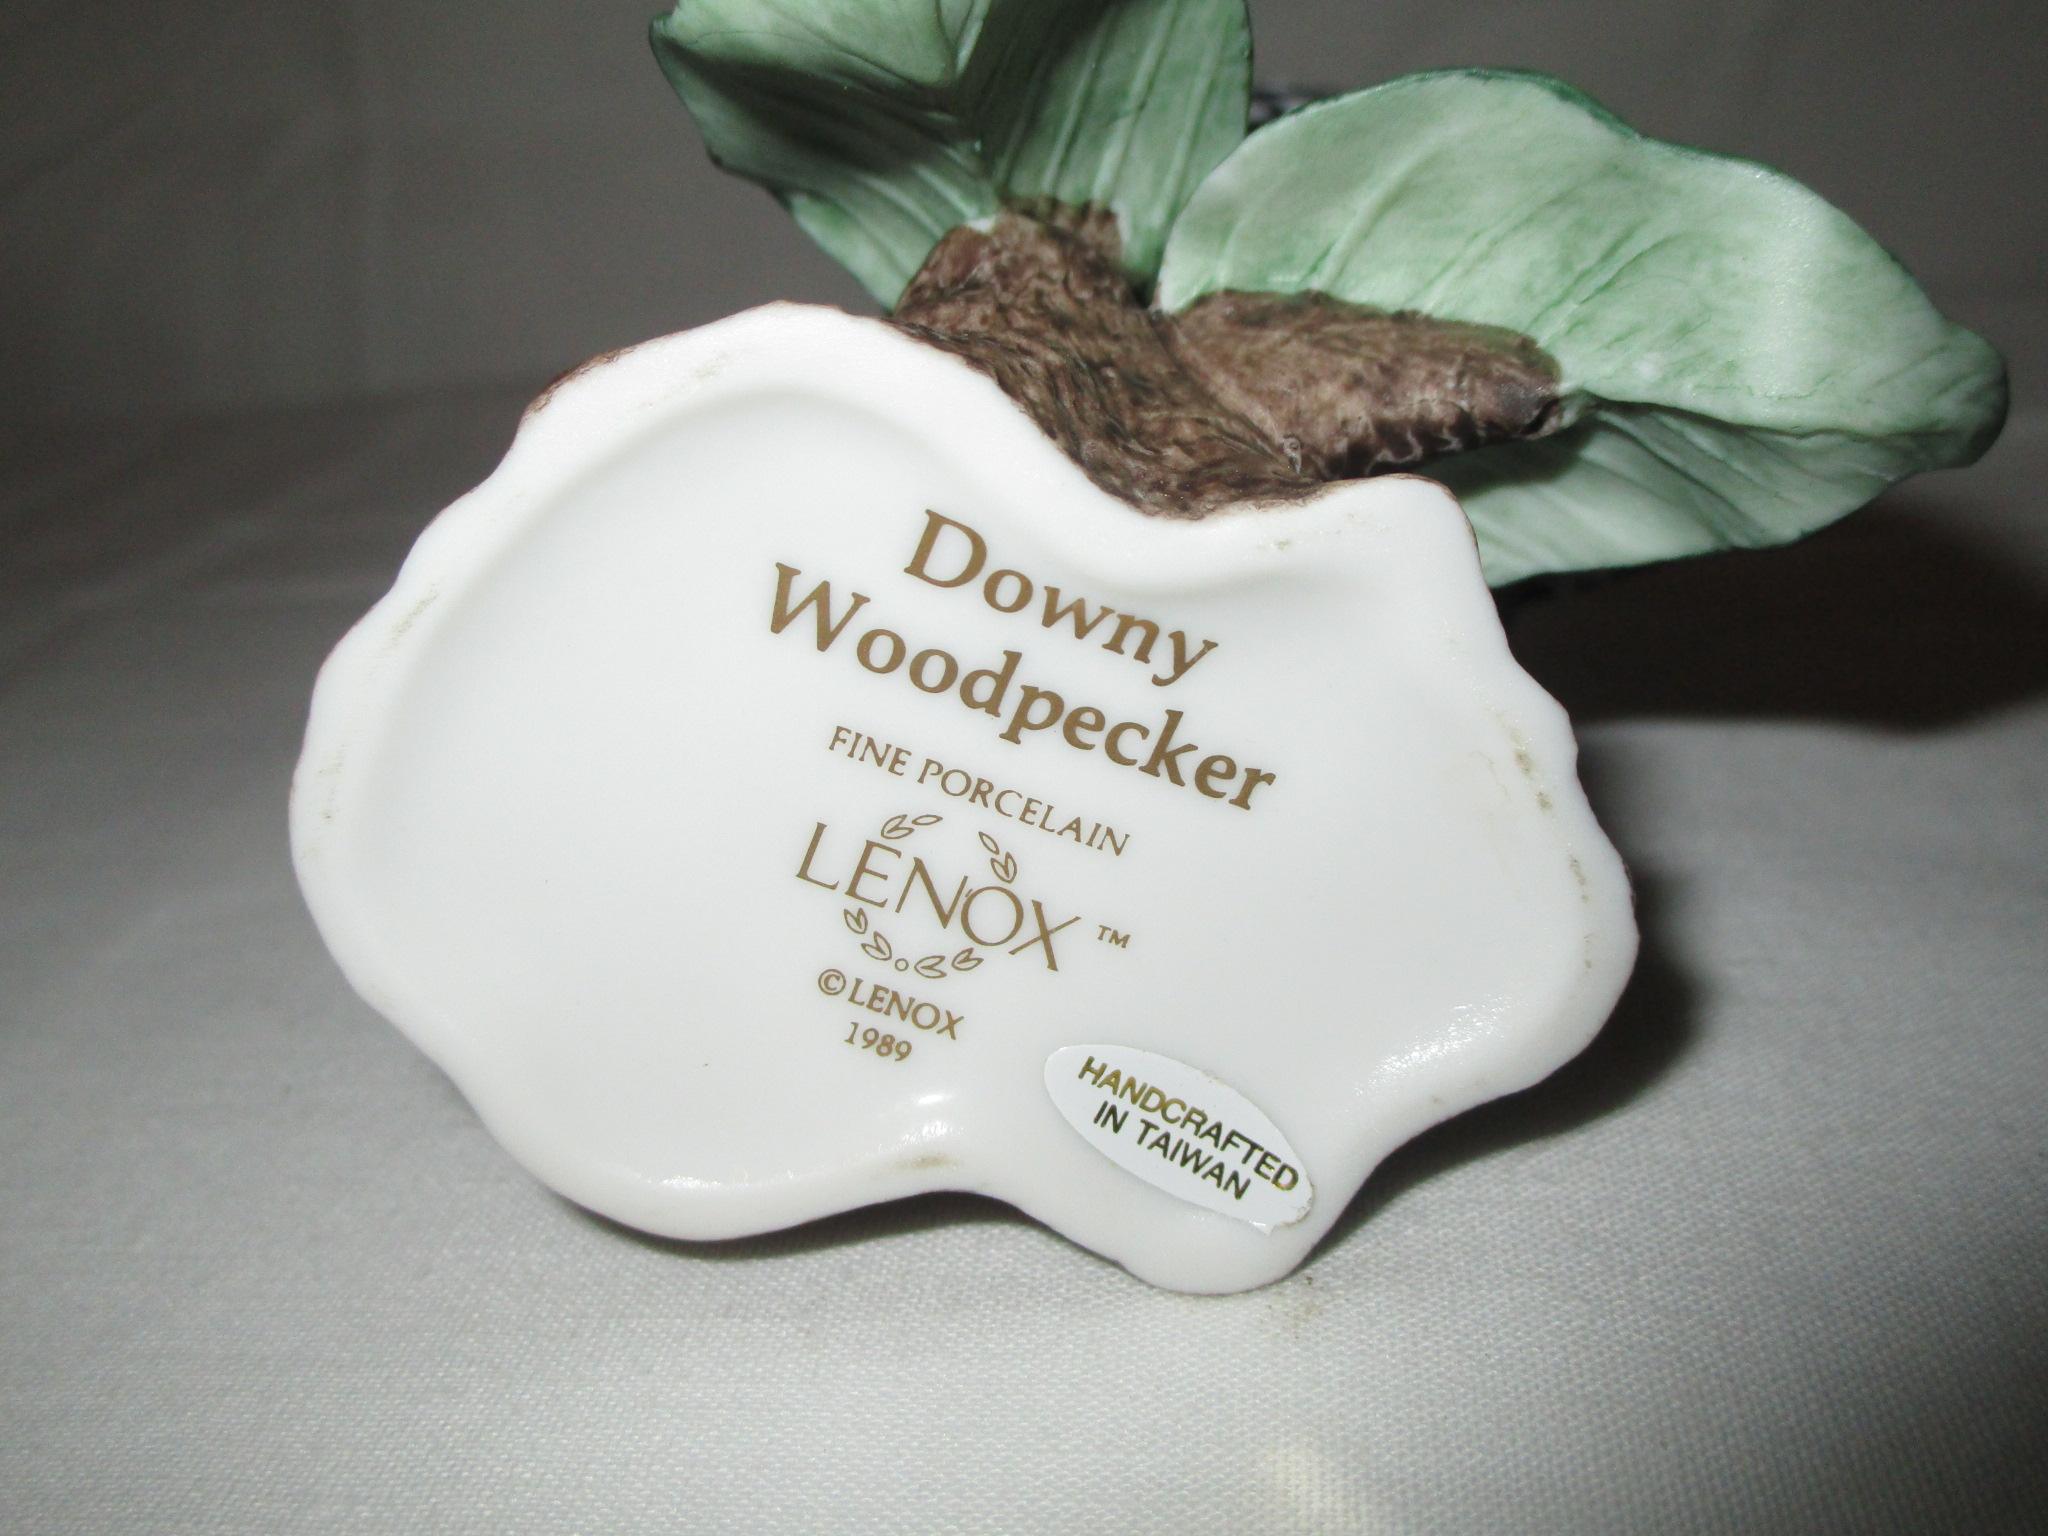 Lenox Porcelain Downy Woodpecker Figurine © 1989  5"